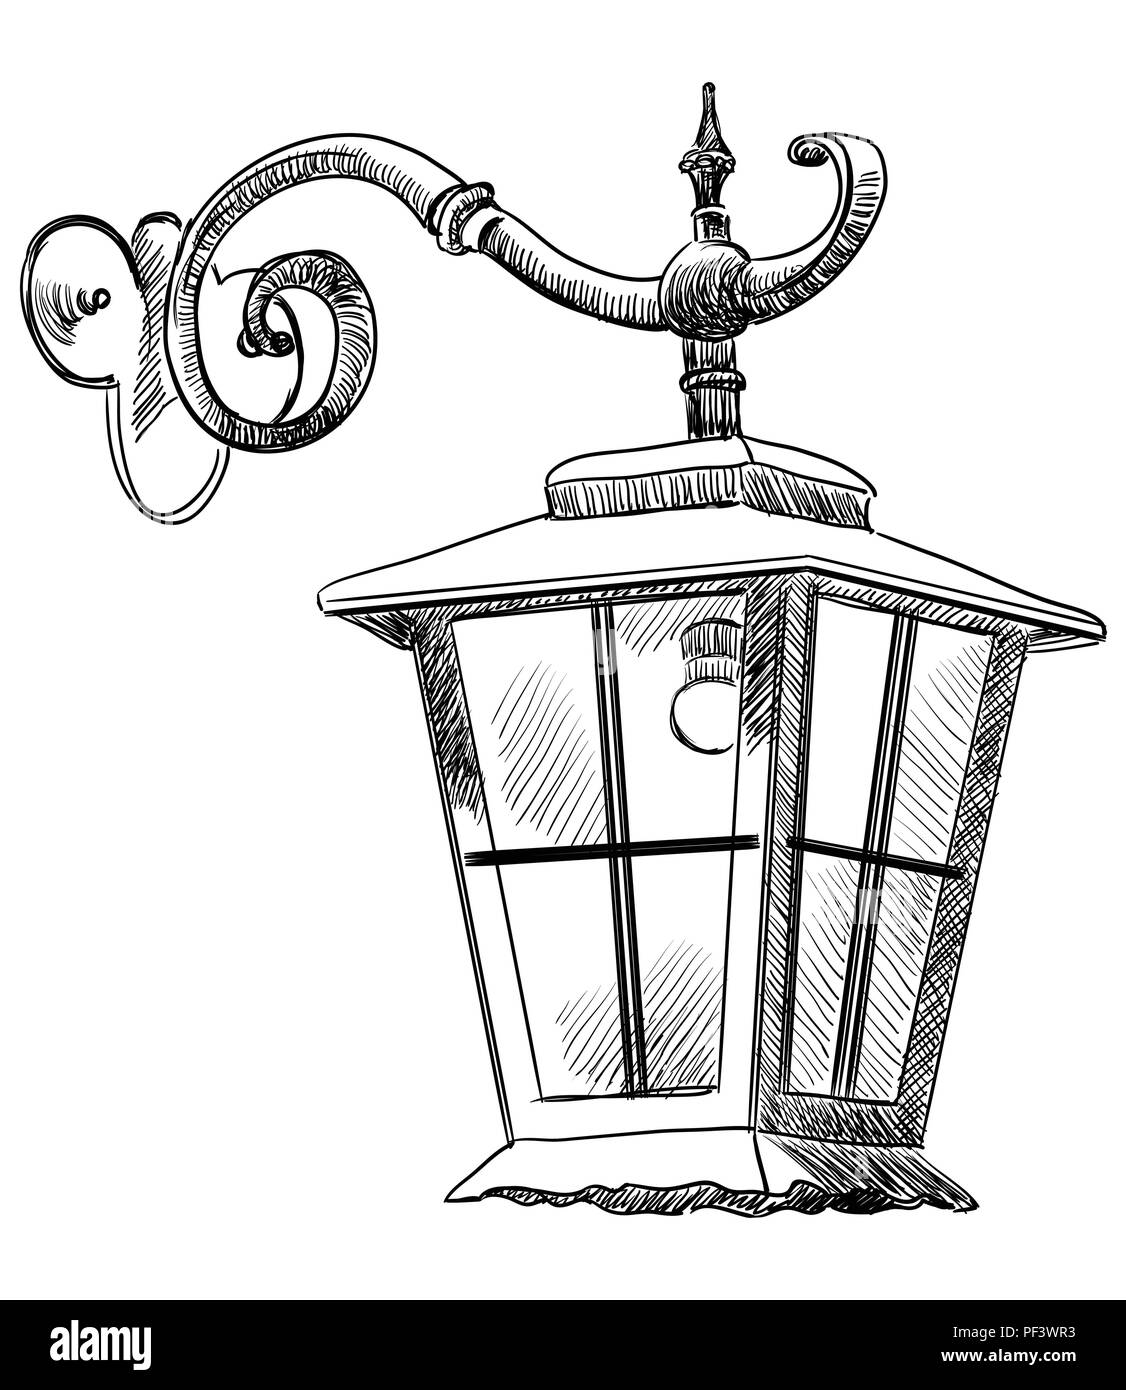 Handzeichnung alte hanging lantern Vektor monochromen Abbildung in schwarz auf weißem Hintergrund Stock Vektor